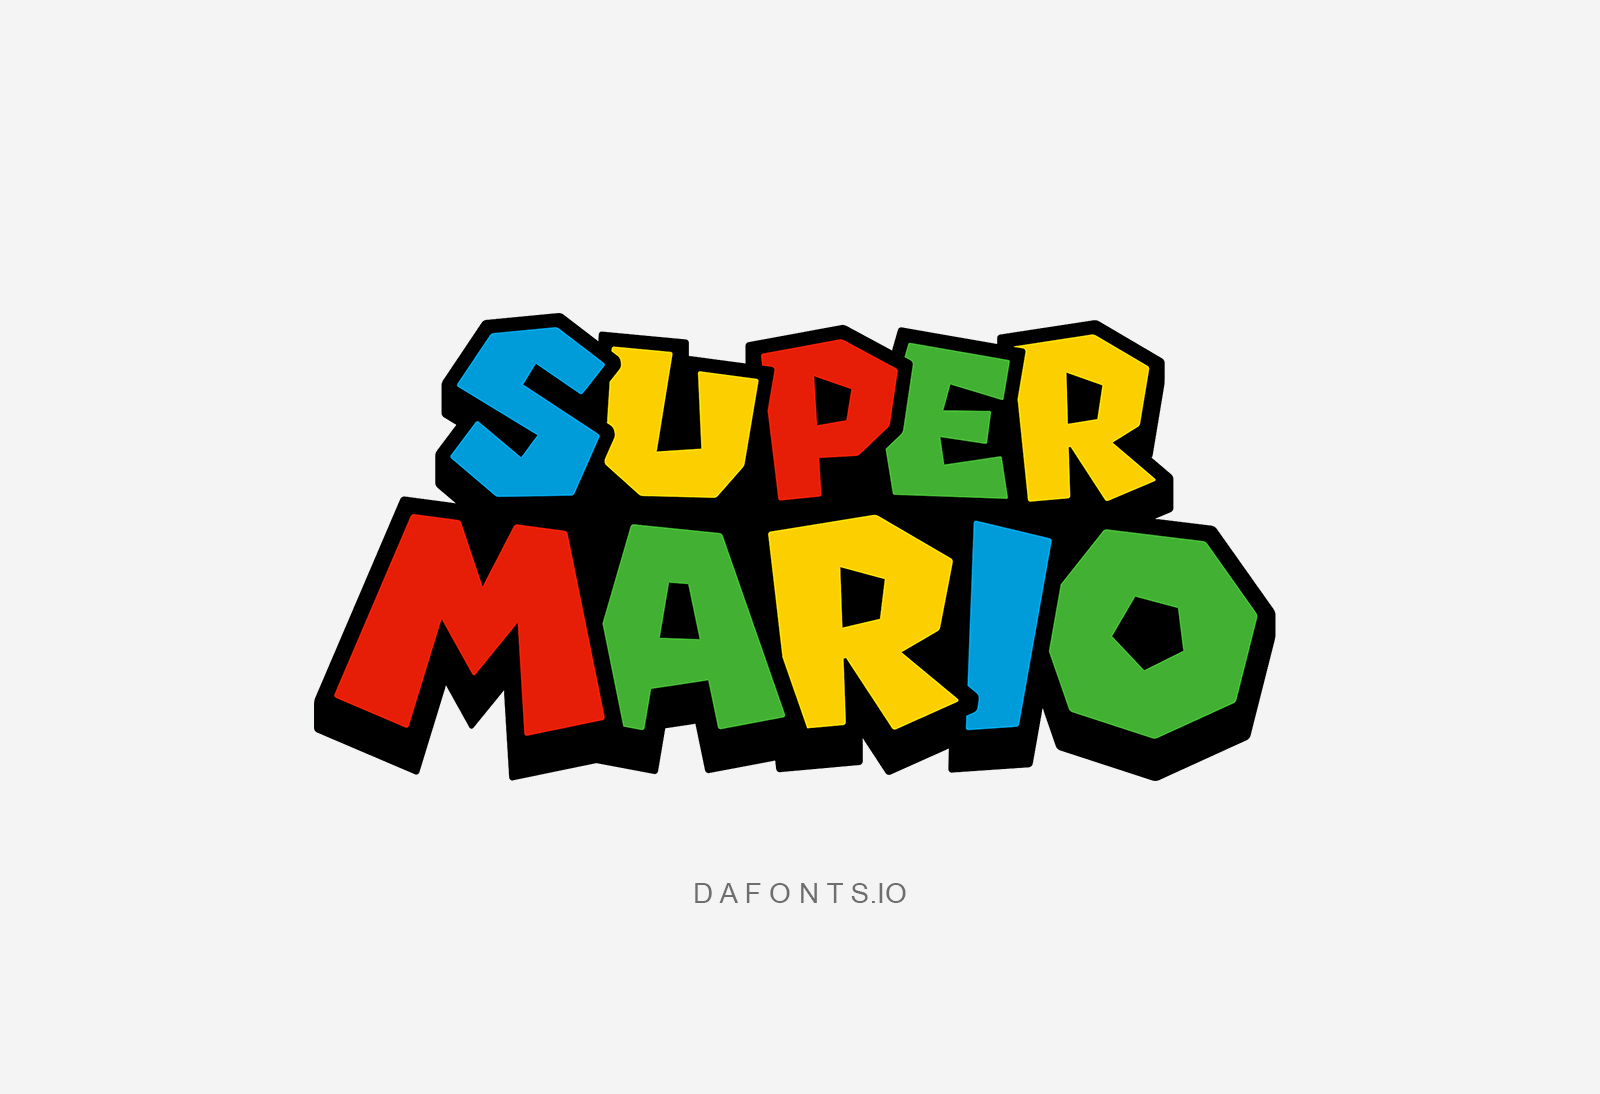 Super Mario Font